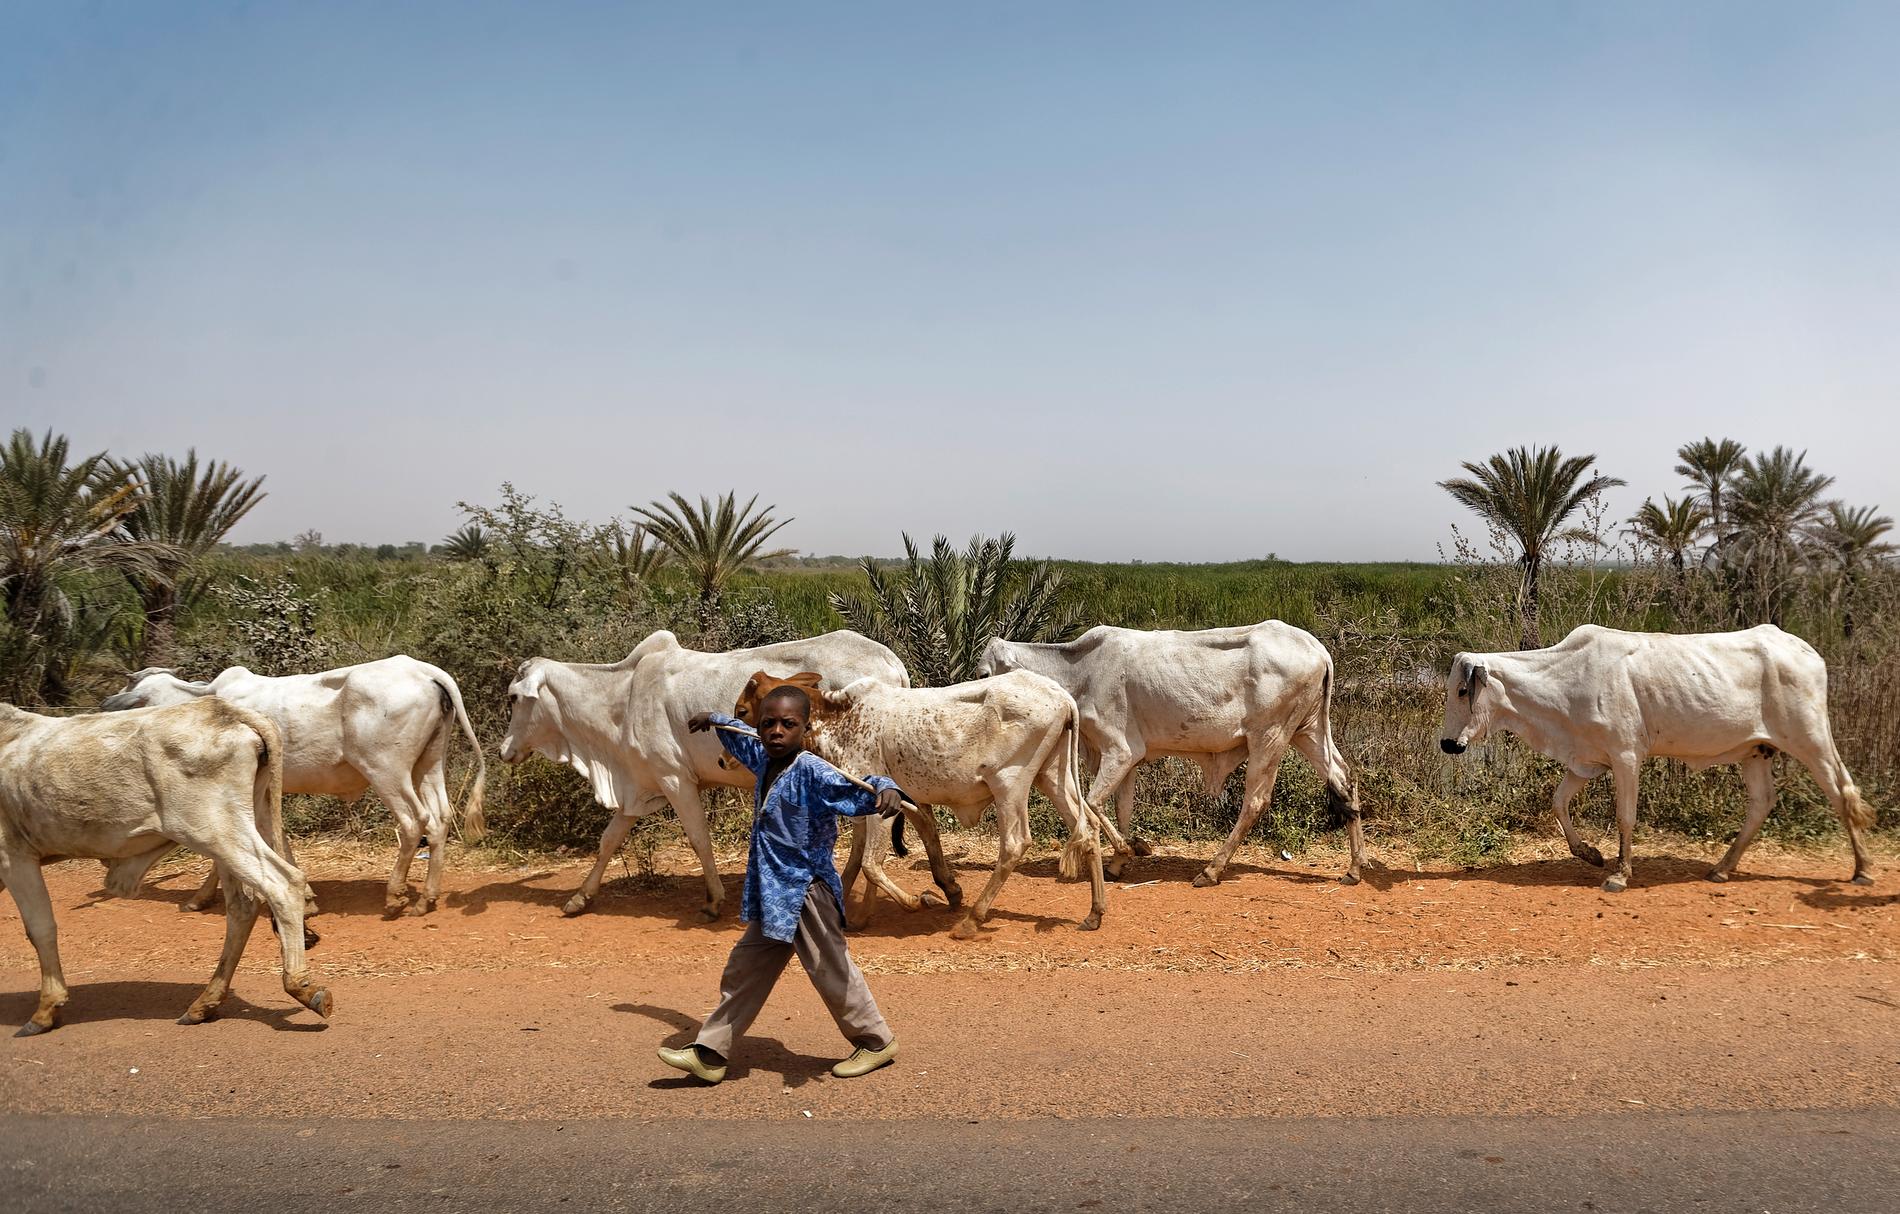 En pojke vaktar boskap i Nigeria. Bilden har inget med händelsen att göra. Arkivbild.